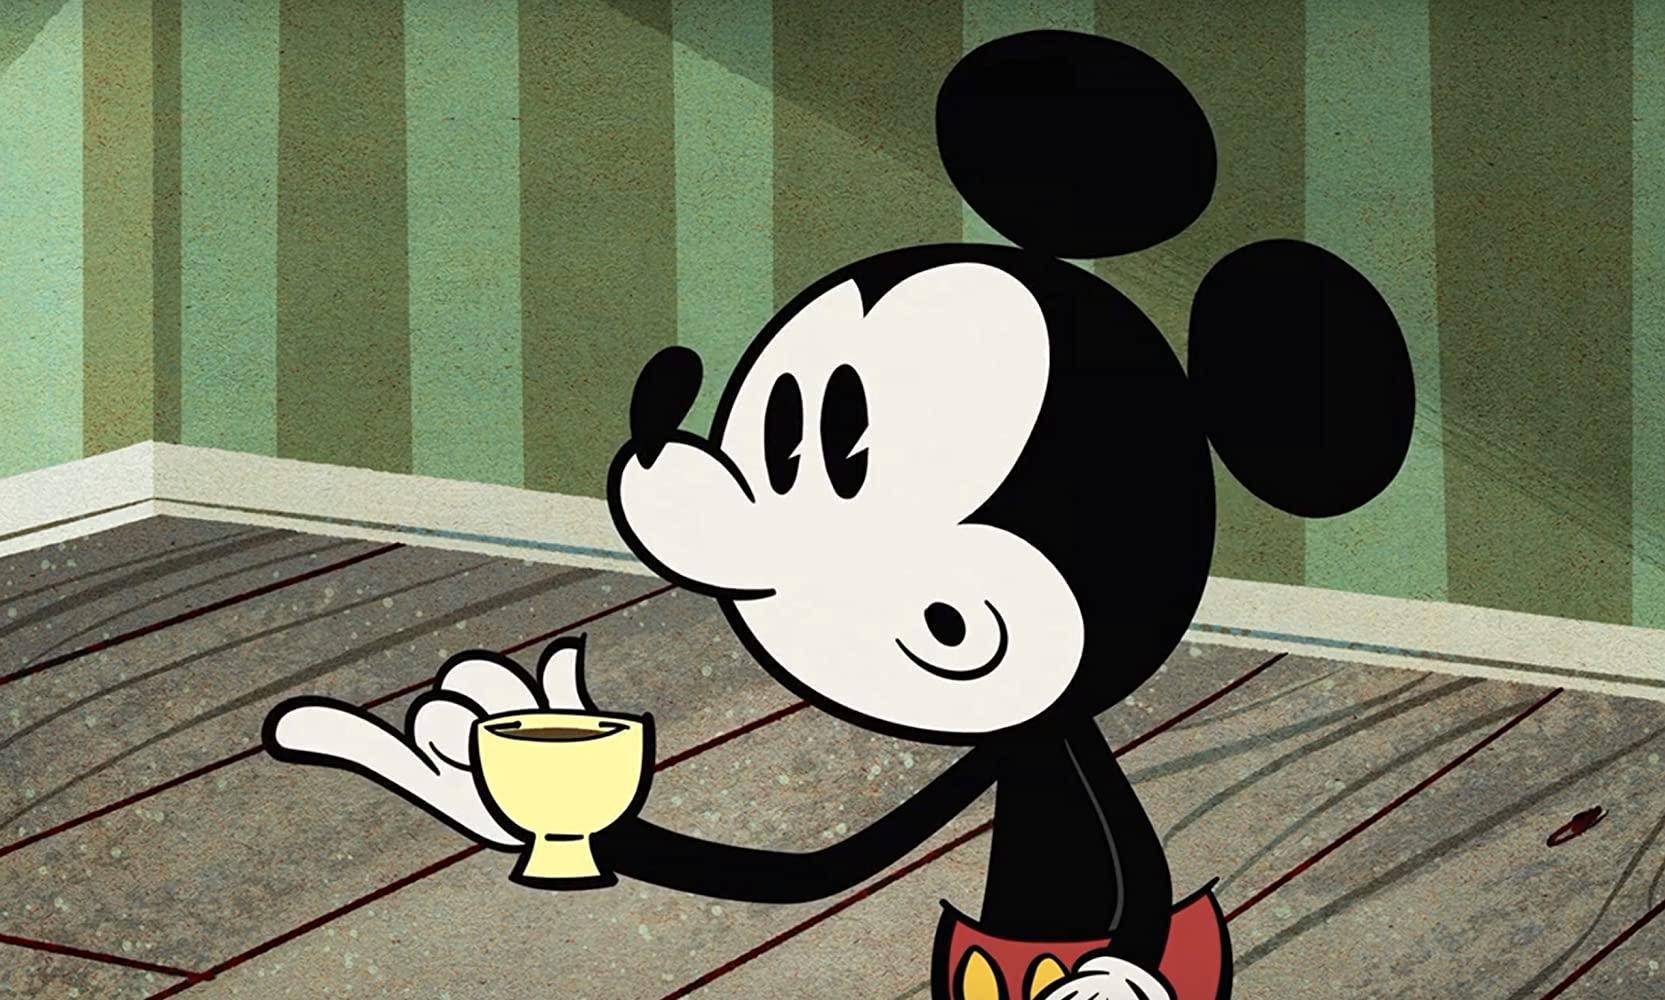 Mickey Mouse: Distinguido caballero (TV) (C)